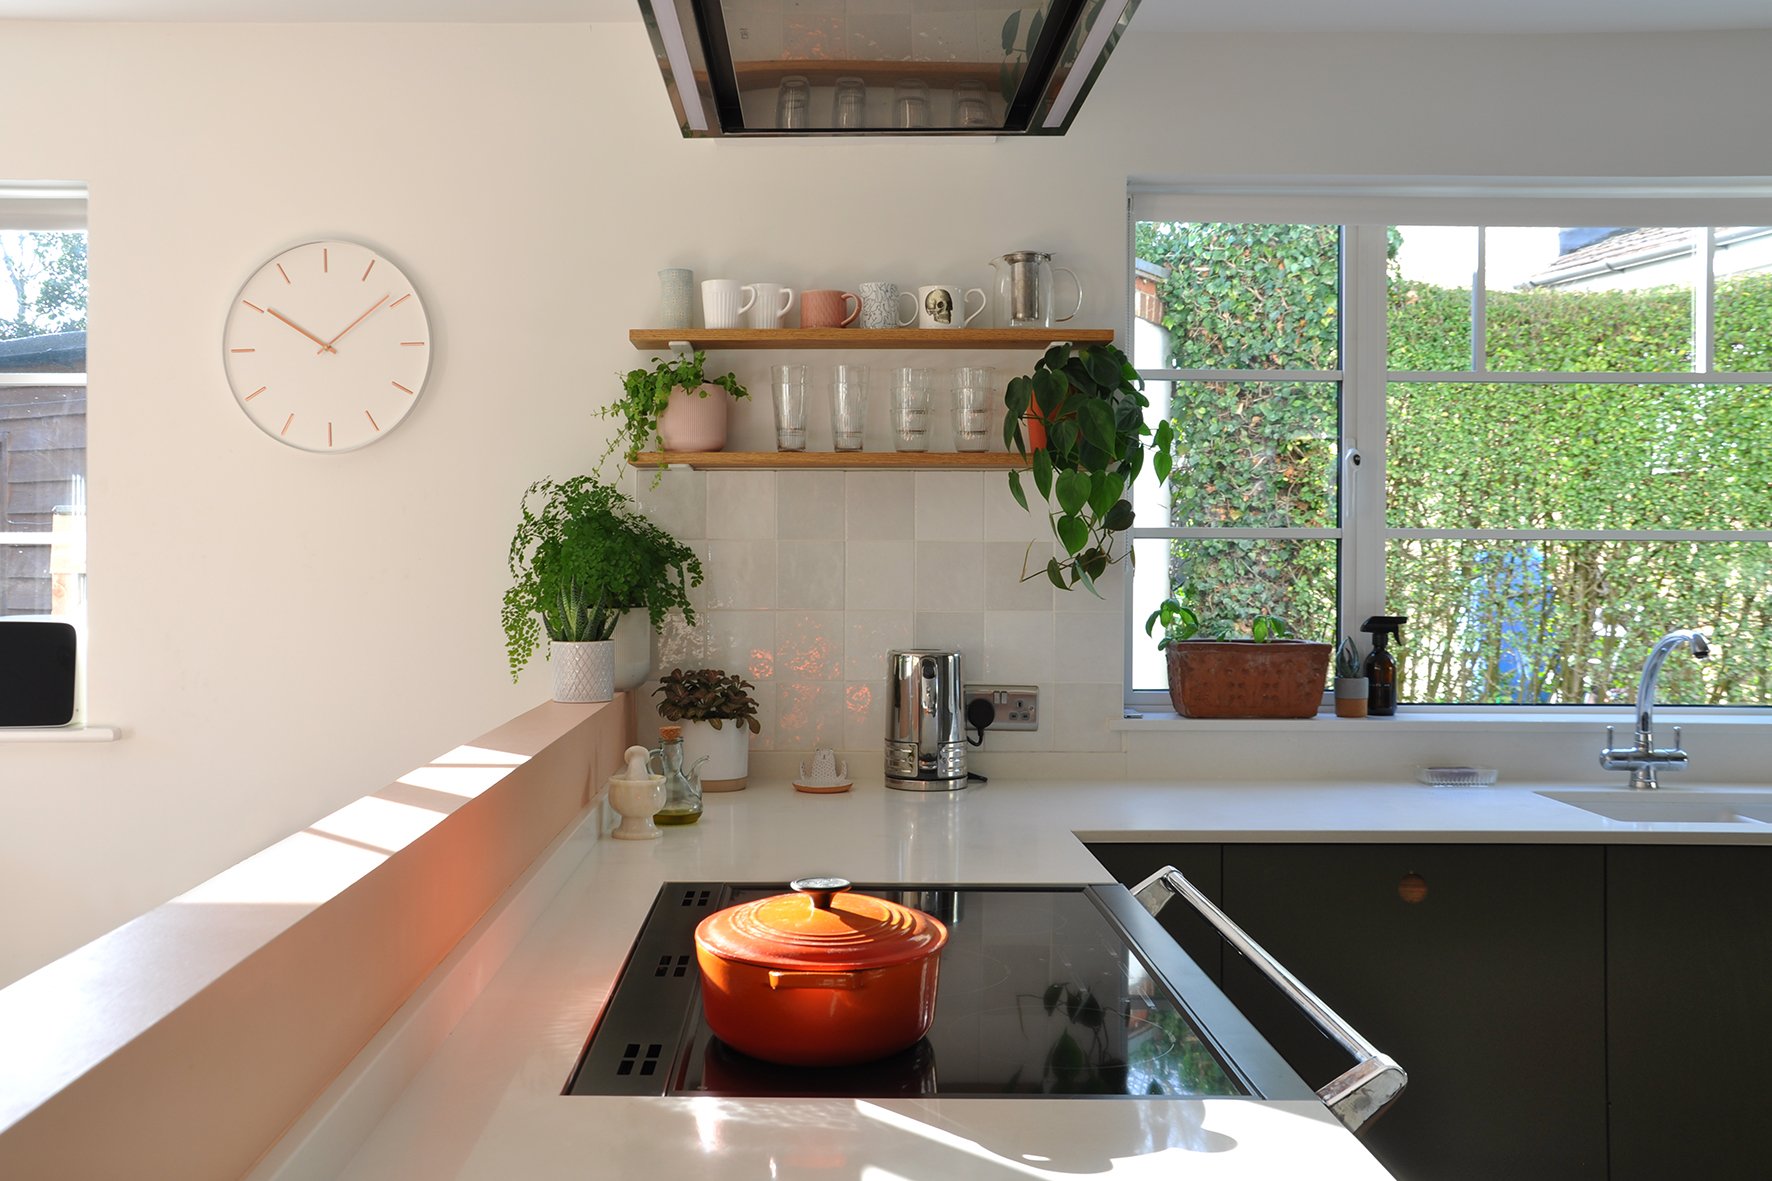 CharlotteBucciero-Interiors-modern-kitchen-cabinet-design-white-worktop.jpg